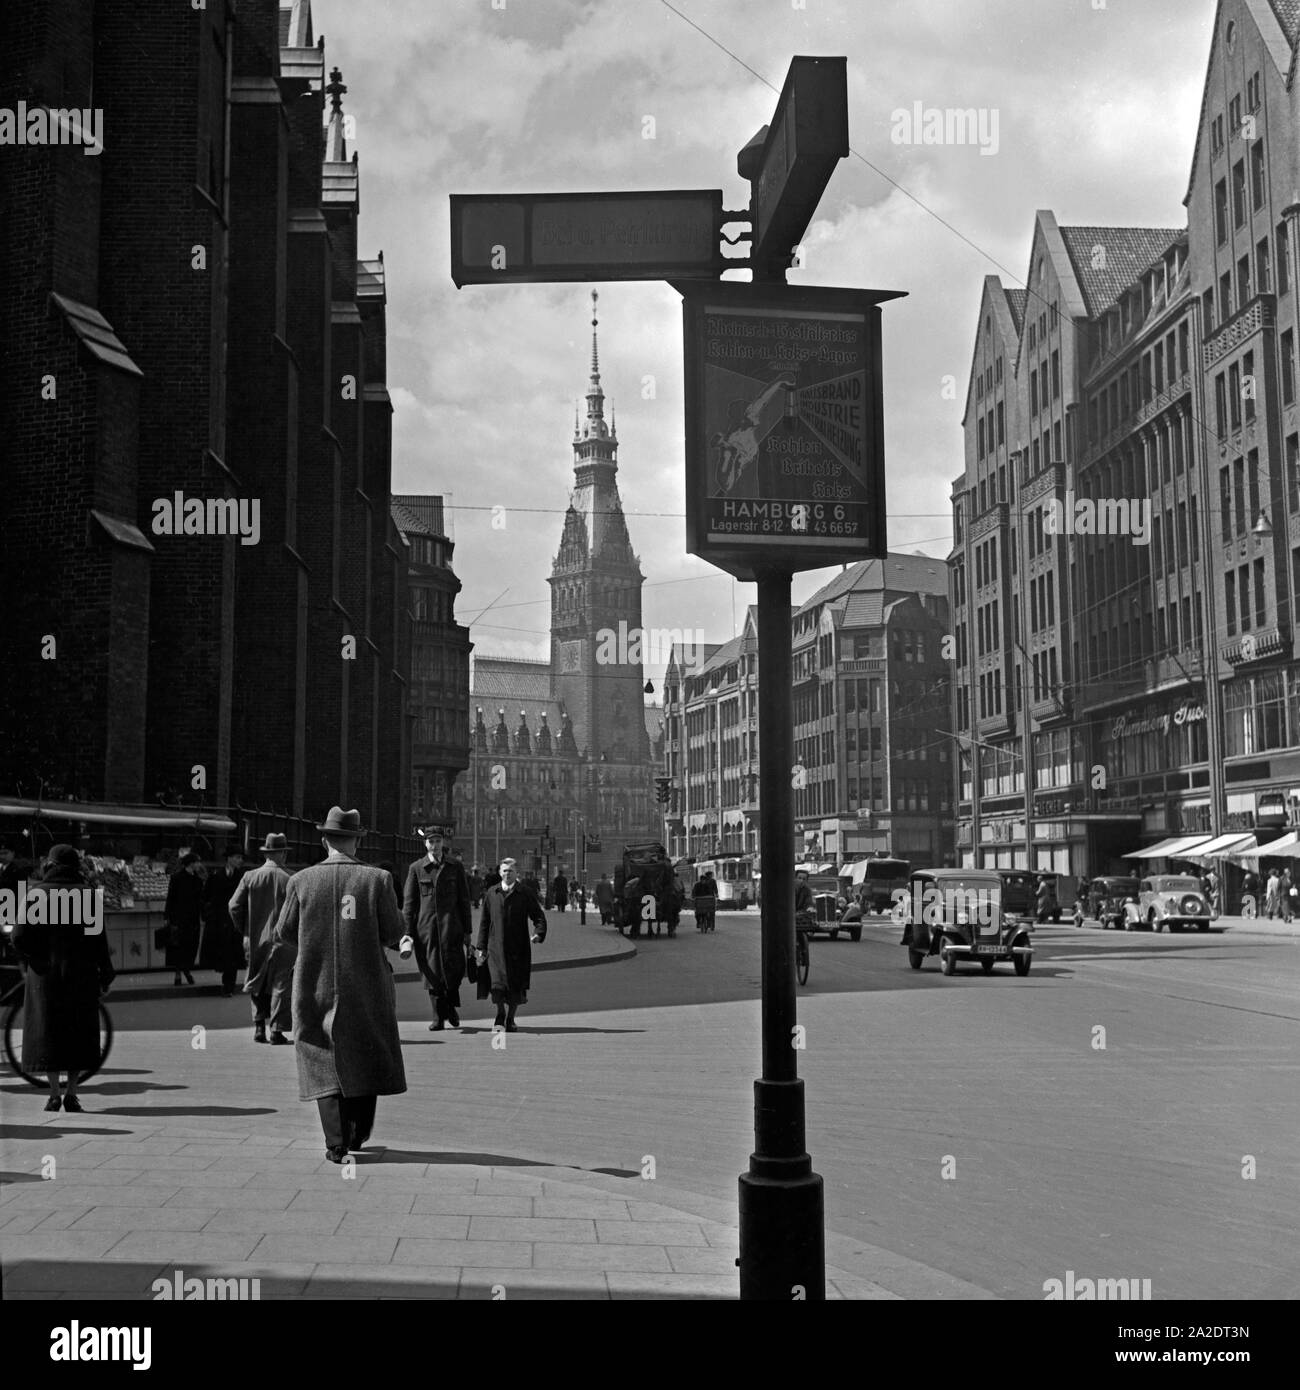 Die Mönckebergstraße mit Blick auf das Rathaus à Hamburg, Deutschland 1930 er Jahre. La Moenckebergstrasse avec vue tio l'hôtel de ville de Hambourg, Allemagne 1930. Banque D'Images